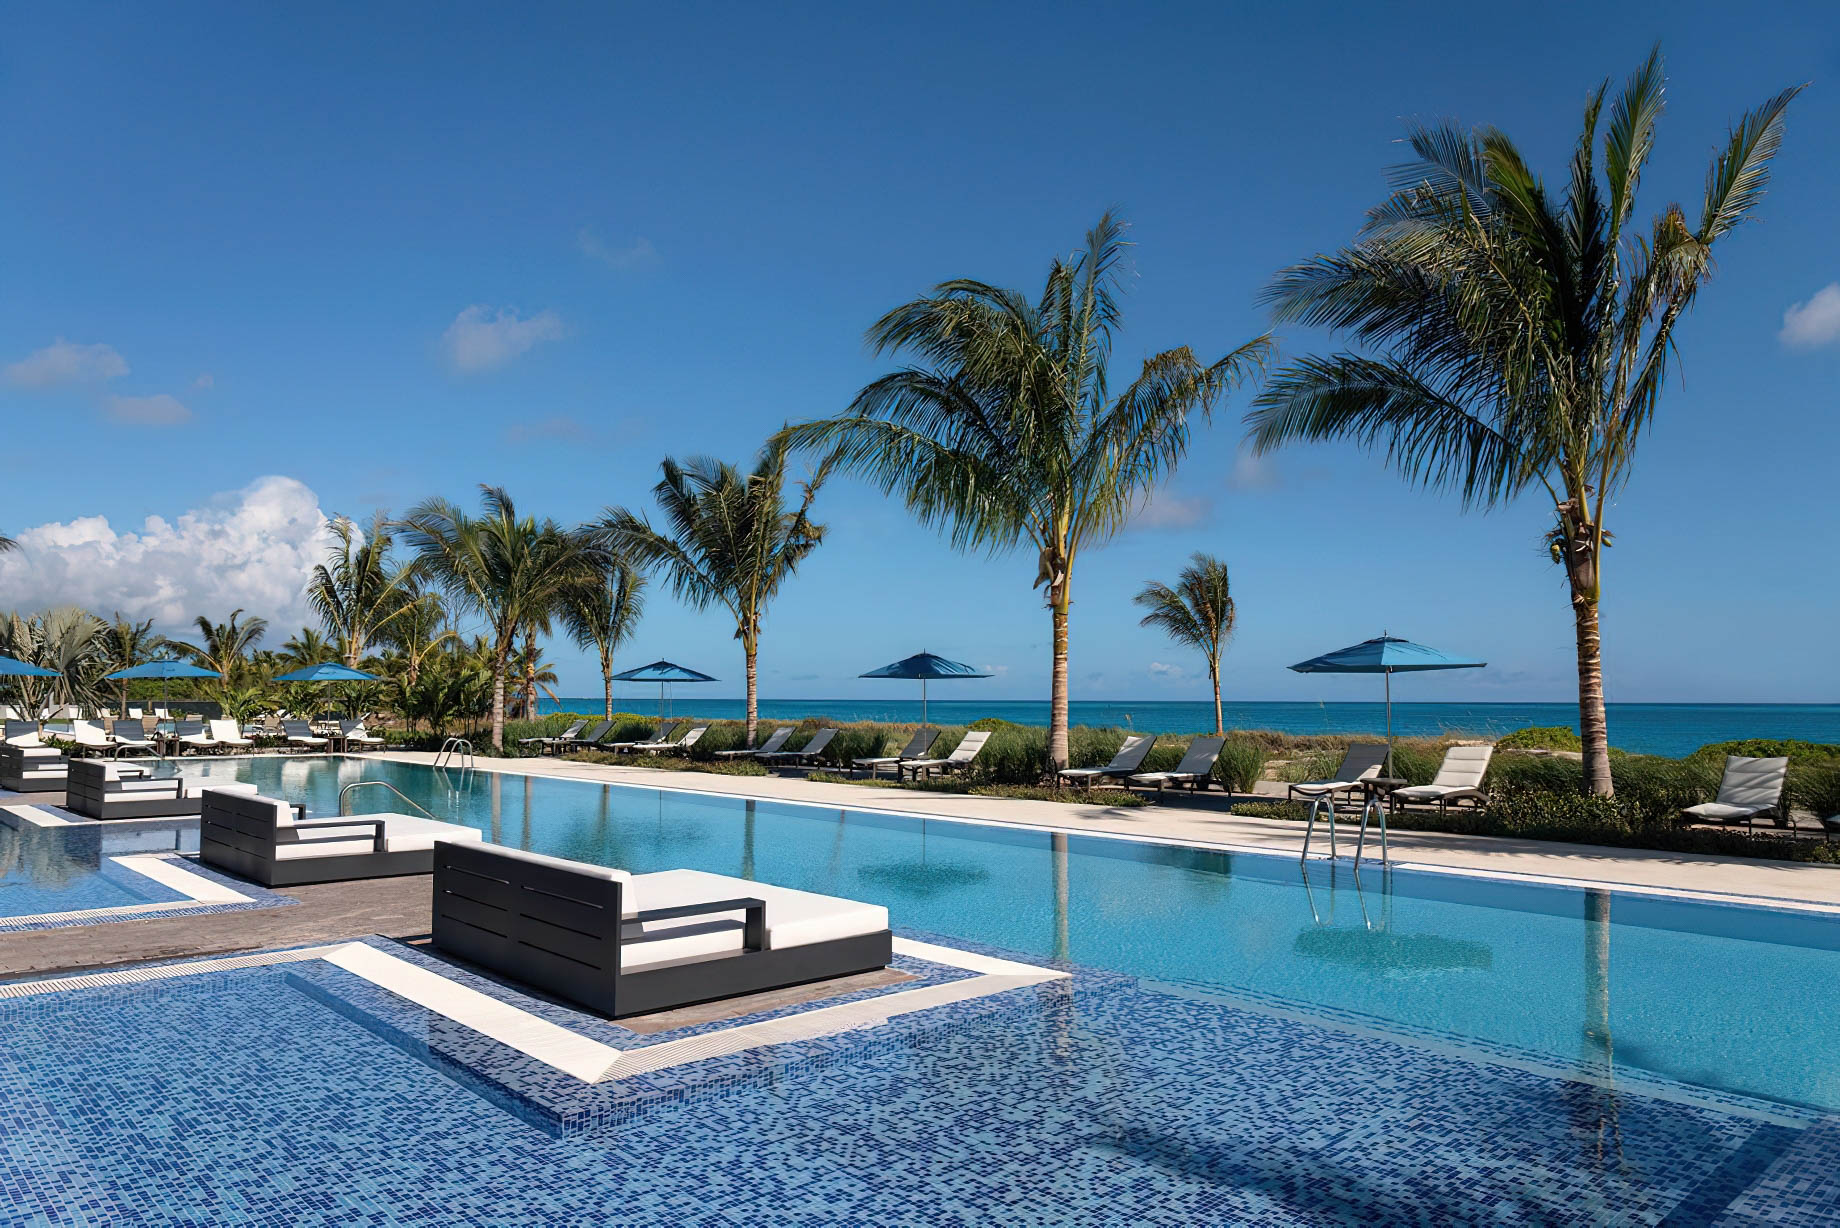 The Ritz-Carlton, Turks & Caicos Resort – Providenciales, Turks and Caicos Islands – Pool Deck Ocean View